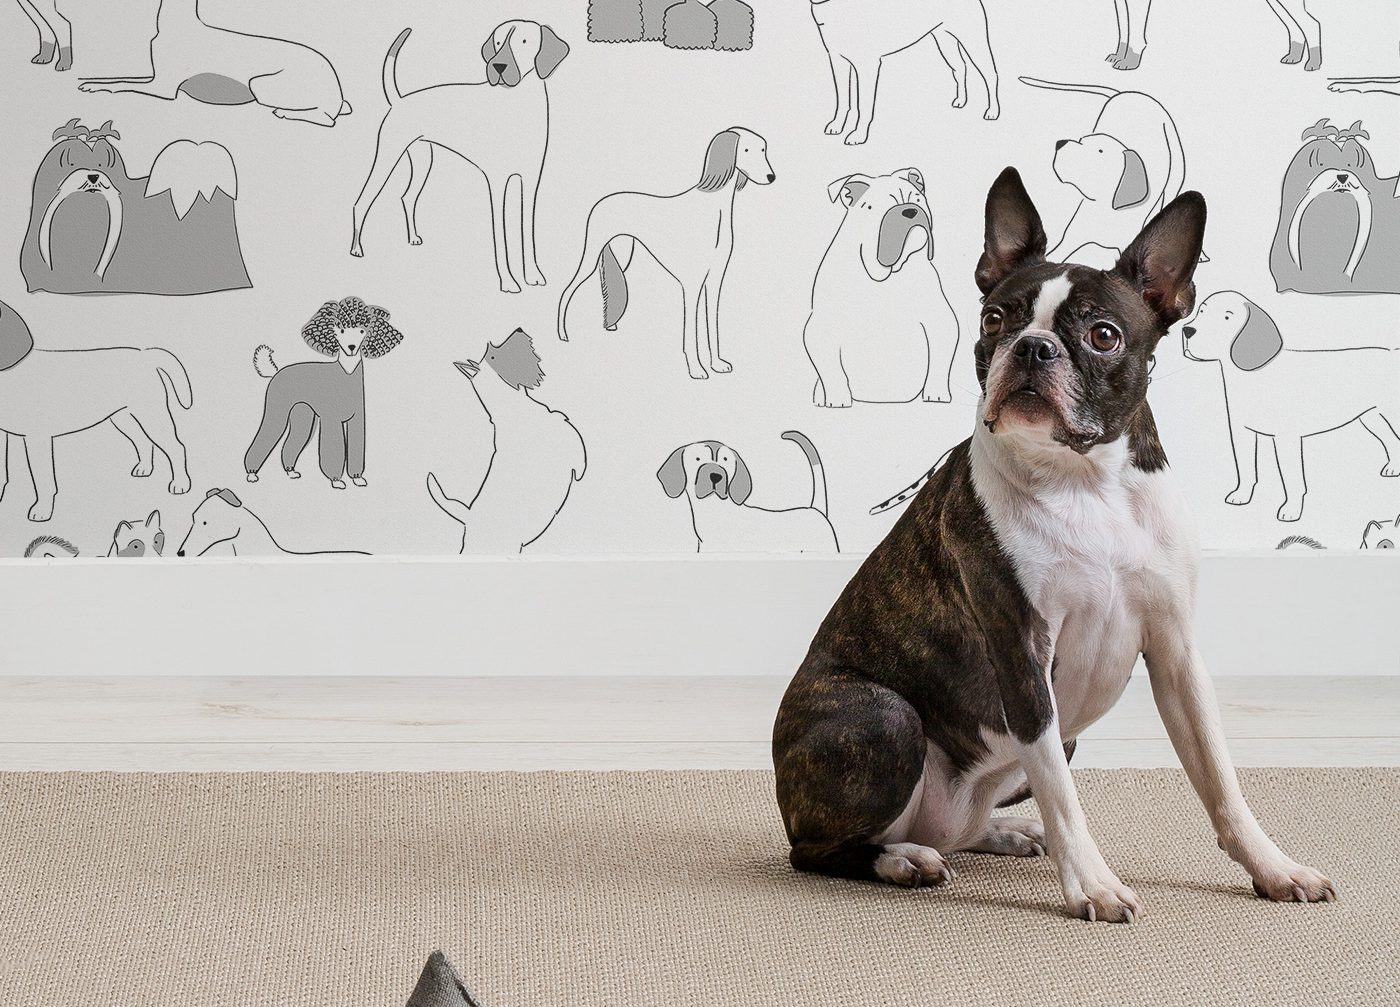 The Best Dog Home Decor Ideas - Dog Wallpaper Wall - HD Wallpaper 